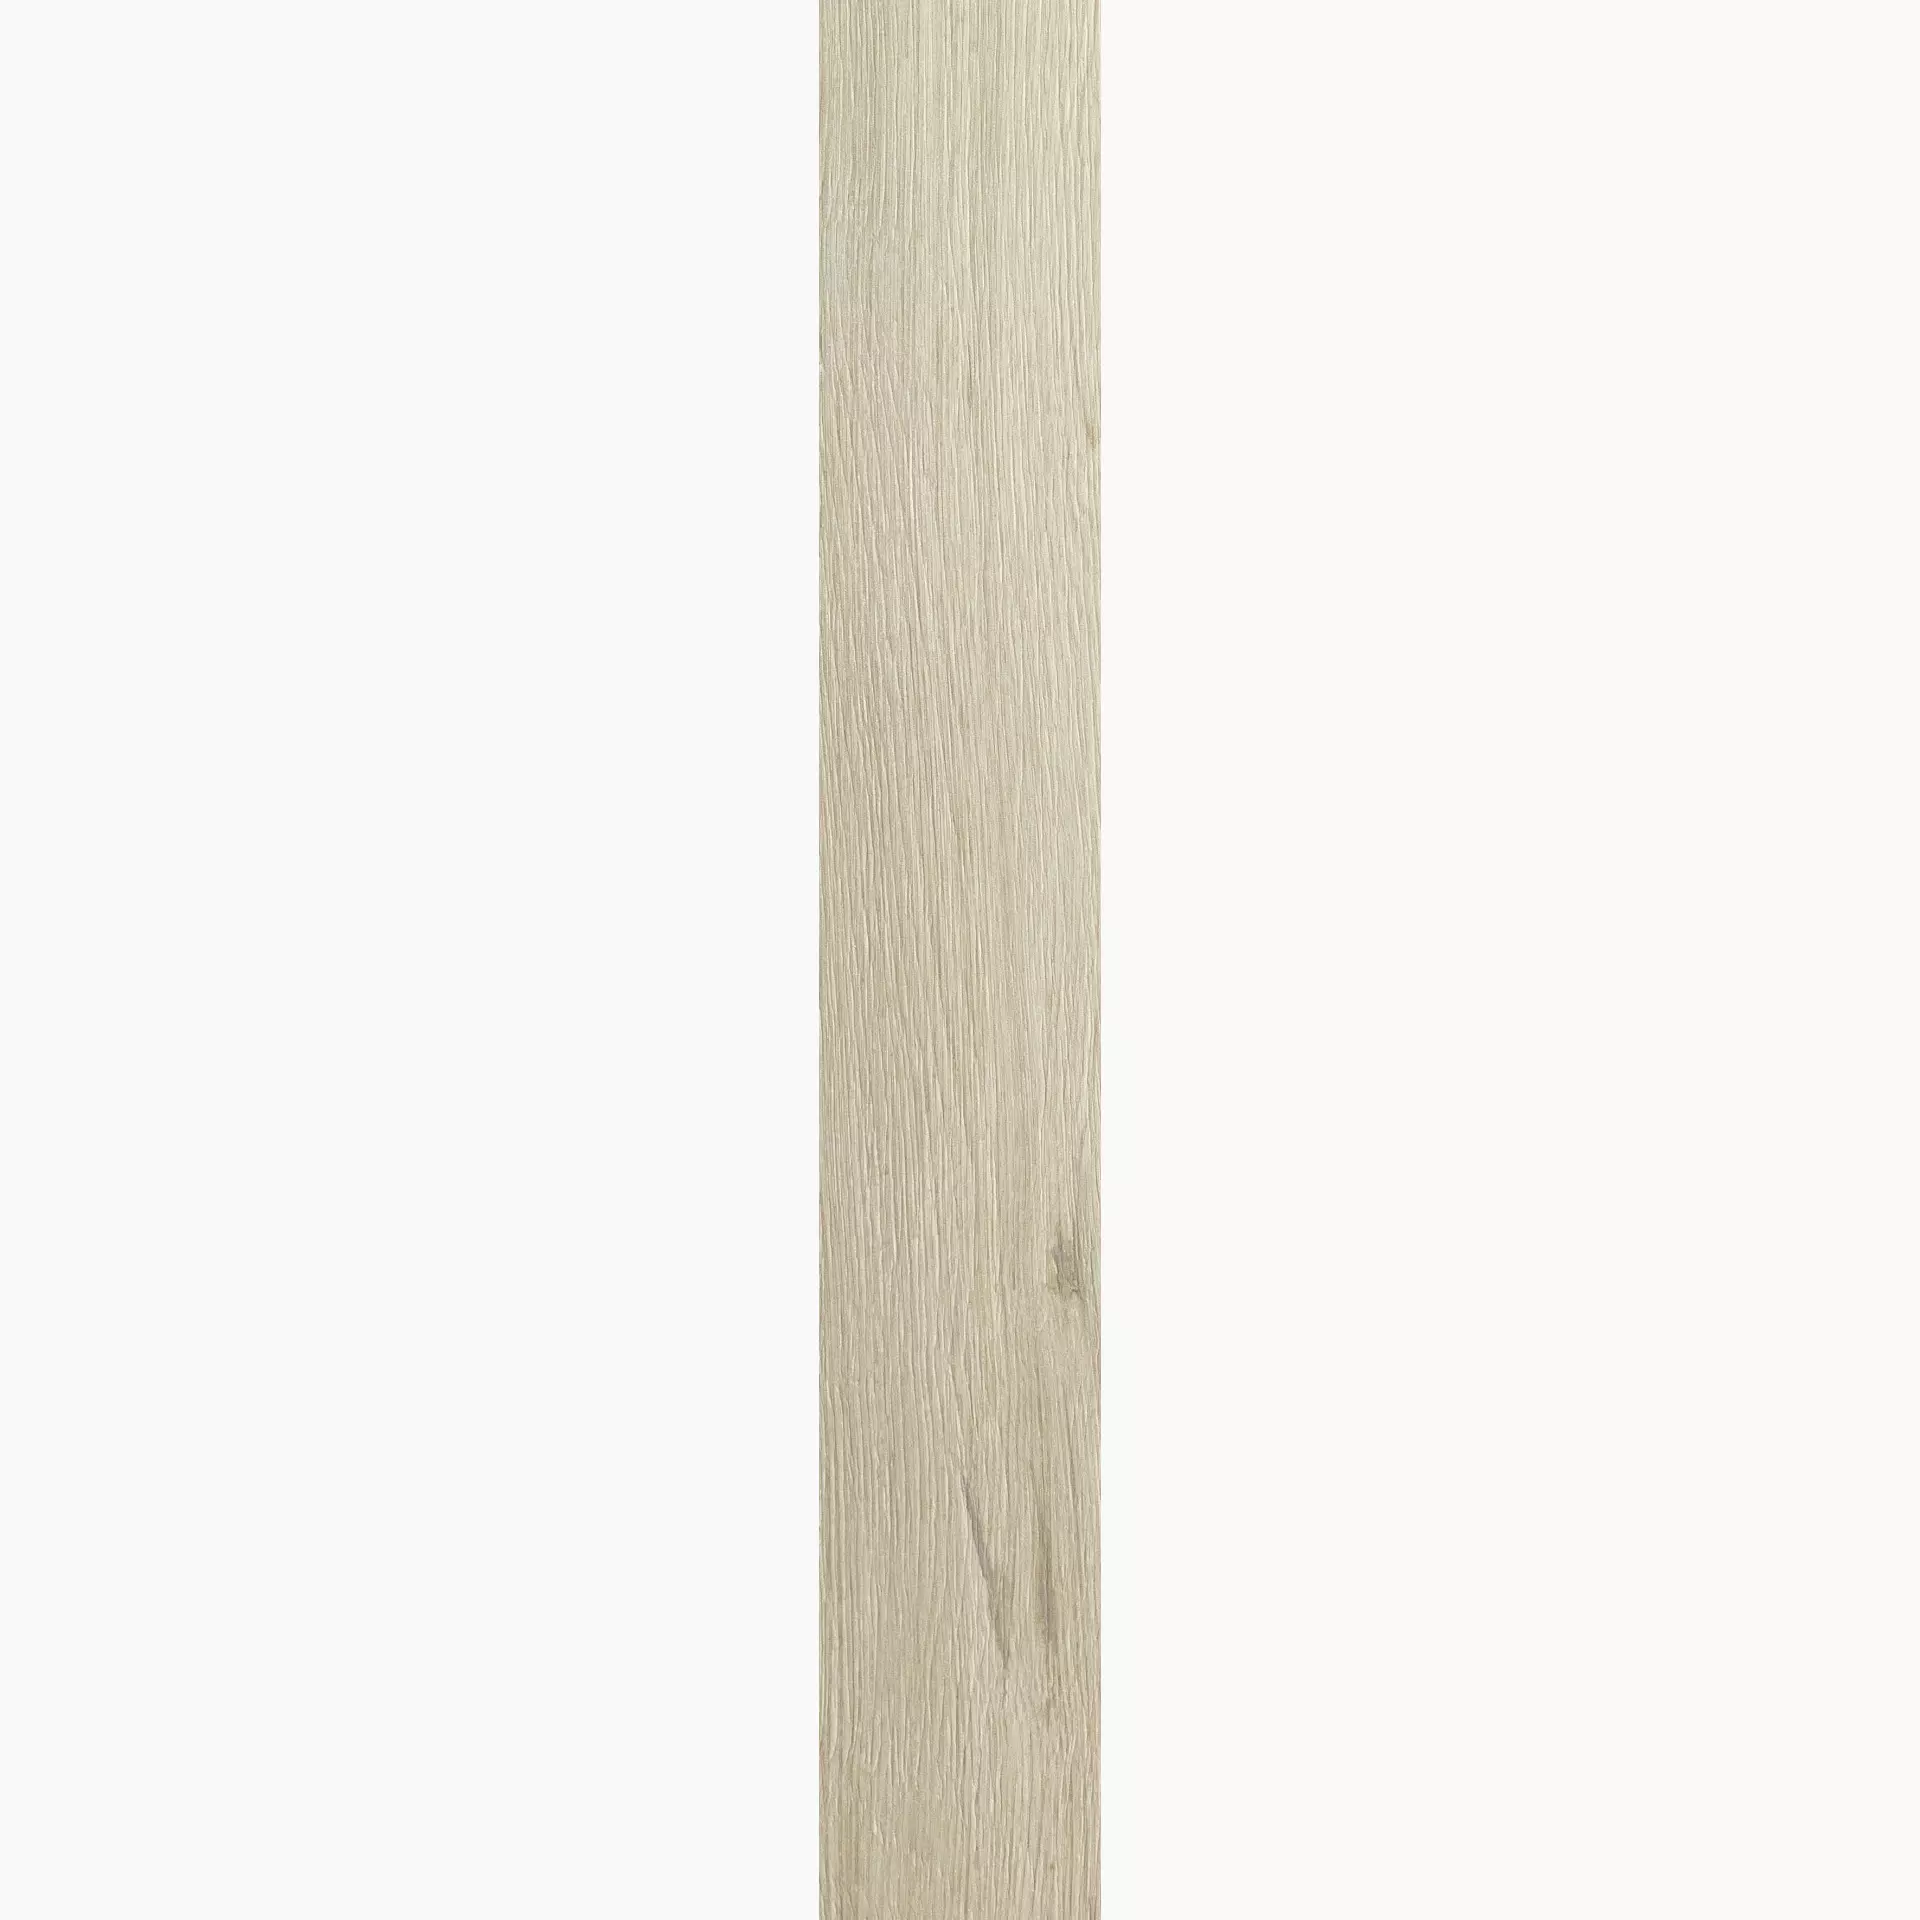 Florim Planches De Rex Amande Naturale – Matt Amande 755693 matt natur 26,5x180cm rektifiziert 9mm